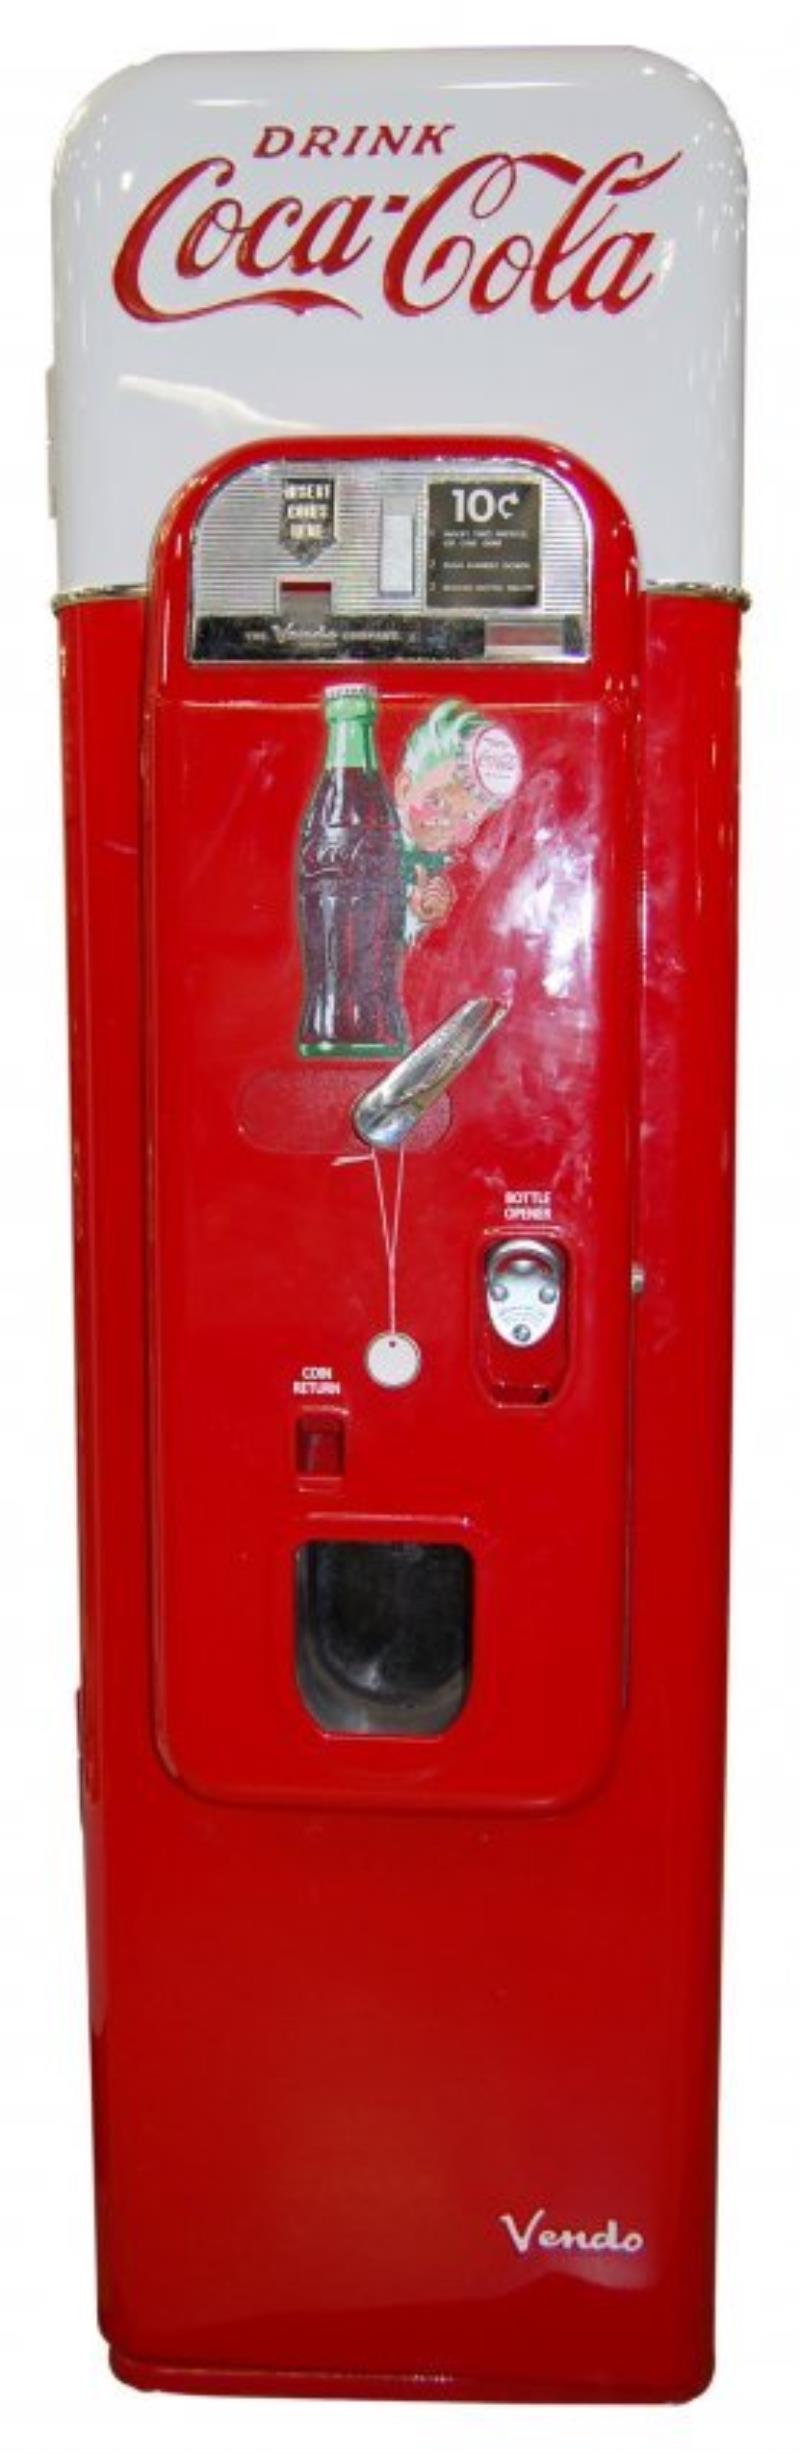 CocaCola V-44 Vendo Machine 1956-57-Ser.#19568A37